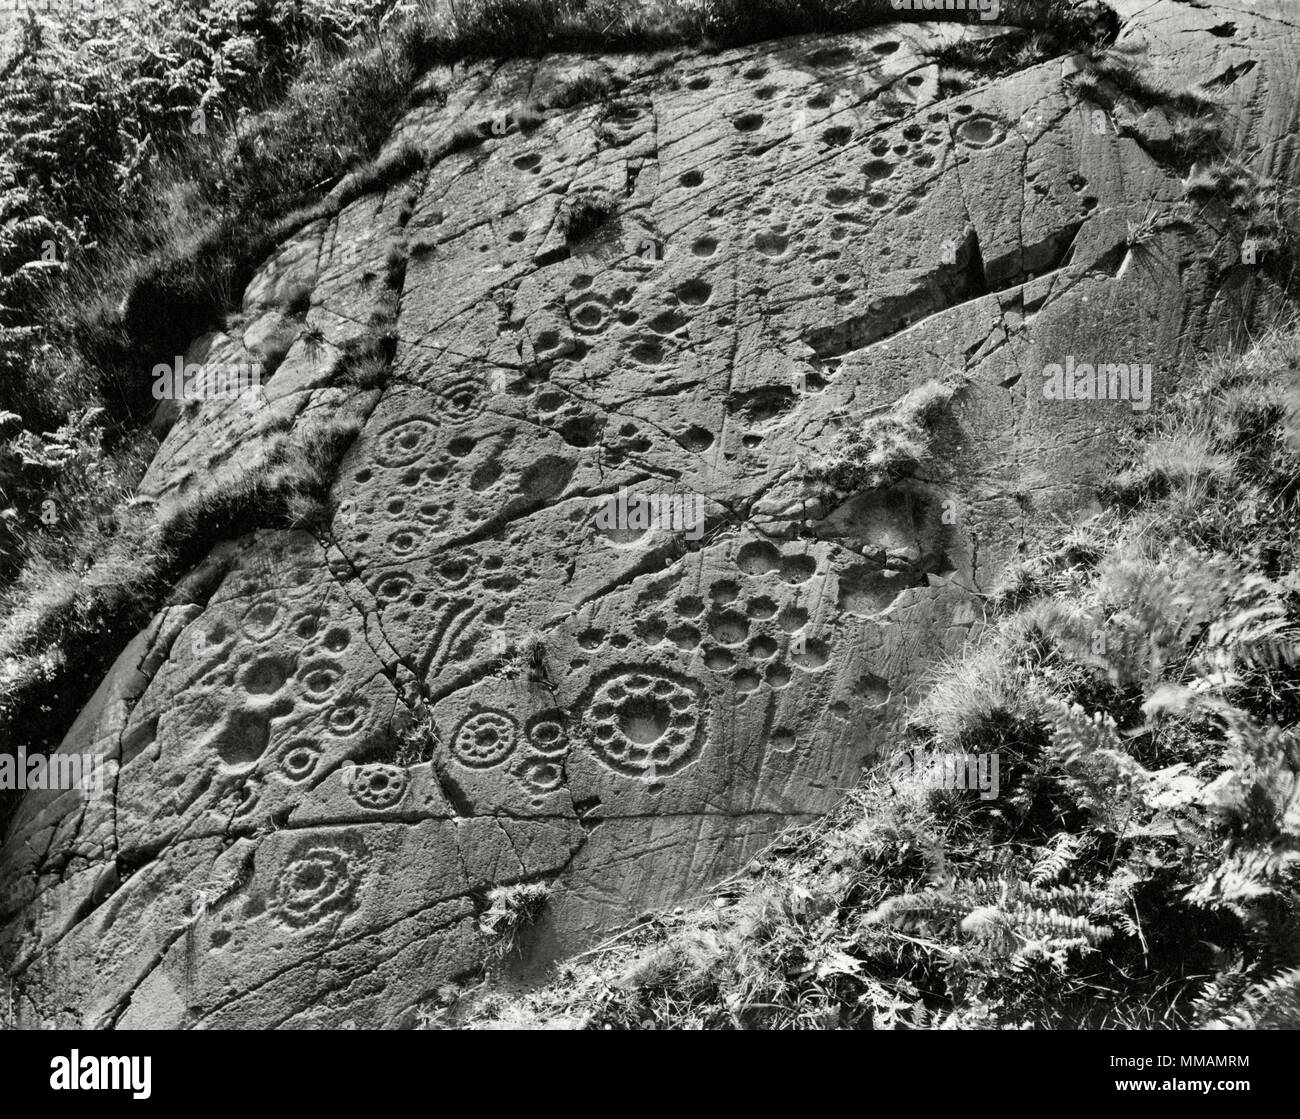 Visualizzare NW alla preistoria le sculture di roccia su un affioramento di scisto (epidiorite) a Ormaig 4km NW di Kilmartin Argyll and Bute, Scotland, Regno Unito. Foto Stock